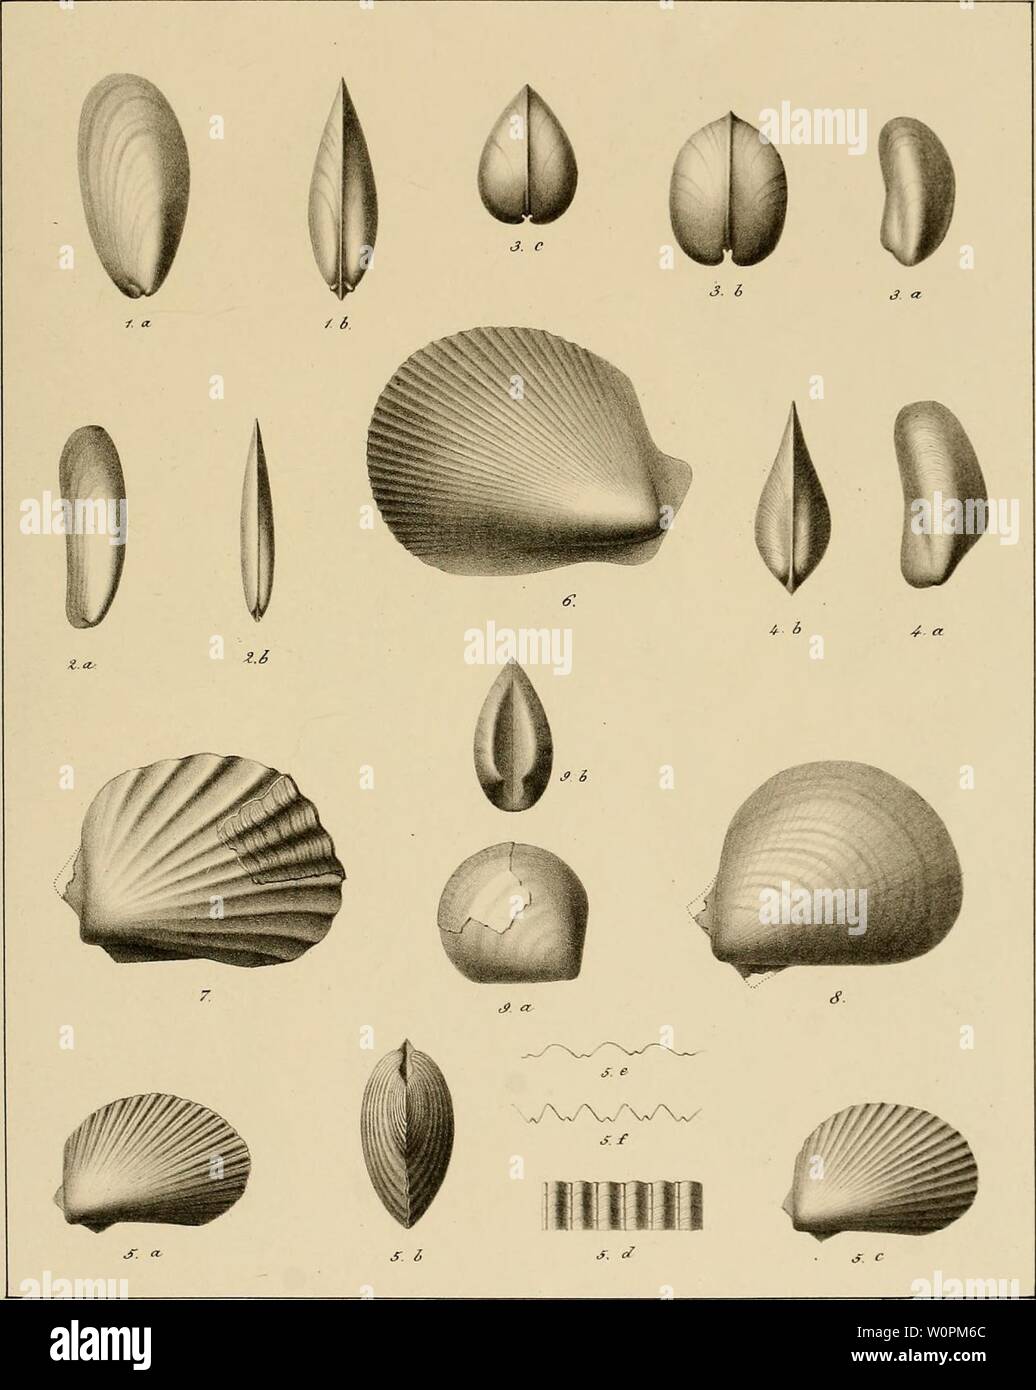 Archive image from page 84 of Description des mollusques fossiles qui. Description des mollusques fossiles qui se trouvent dans les grÃ¨s verts des environs de GenÃ¨ve descriptiondesmo01pict Year: 1847-1853  PI 40    J:Â£i.eÂ£eMÂ£ac- &lt;e Ã»cnÃ e- Fig.l. Mytilus RKodani Yi Z. M. durgitis FiÃ´. 3. M.Giffreanus. Fig. 4-. M. Mortilleti Fig. 5. Lima Itieriana. Fig. 6. L. Sal)audiana. Fig. 7. L. alpina Fi. 8. L. Saxoneti. Fi. 9. 1. albensis. Stock Photo